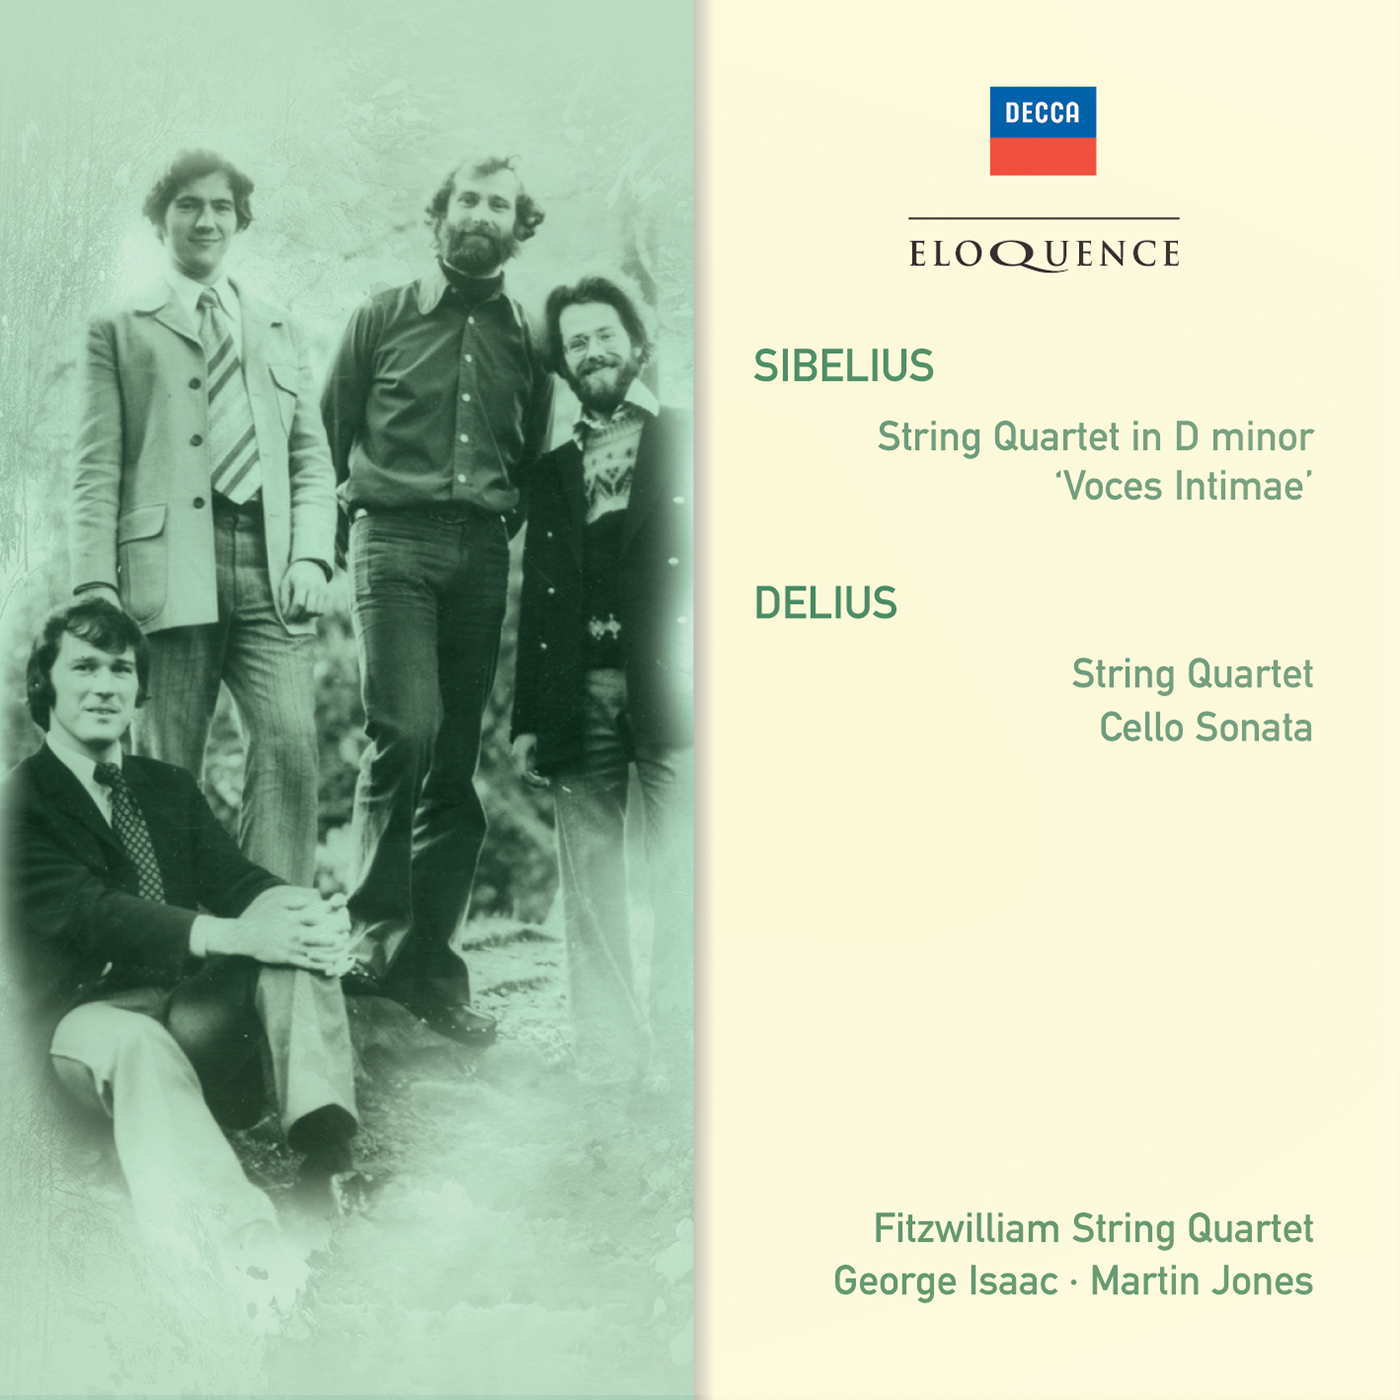 sibelius convert string quartet to piano